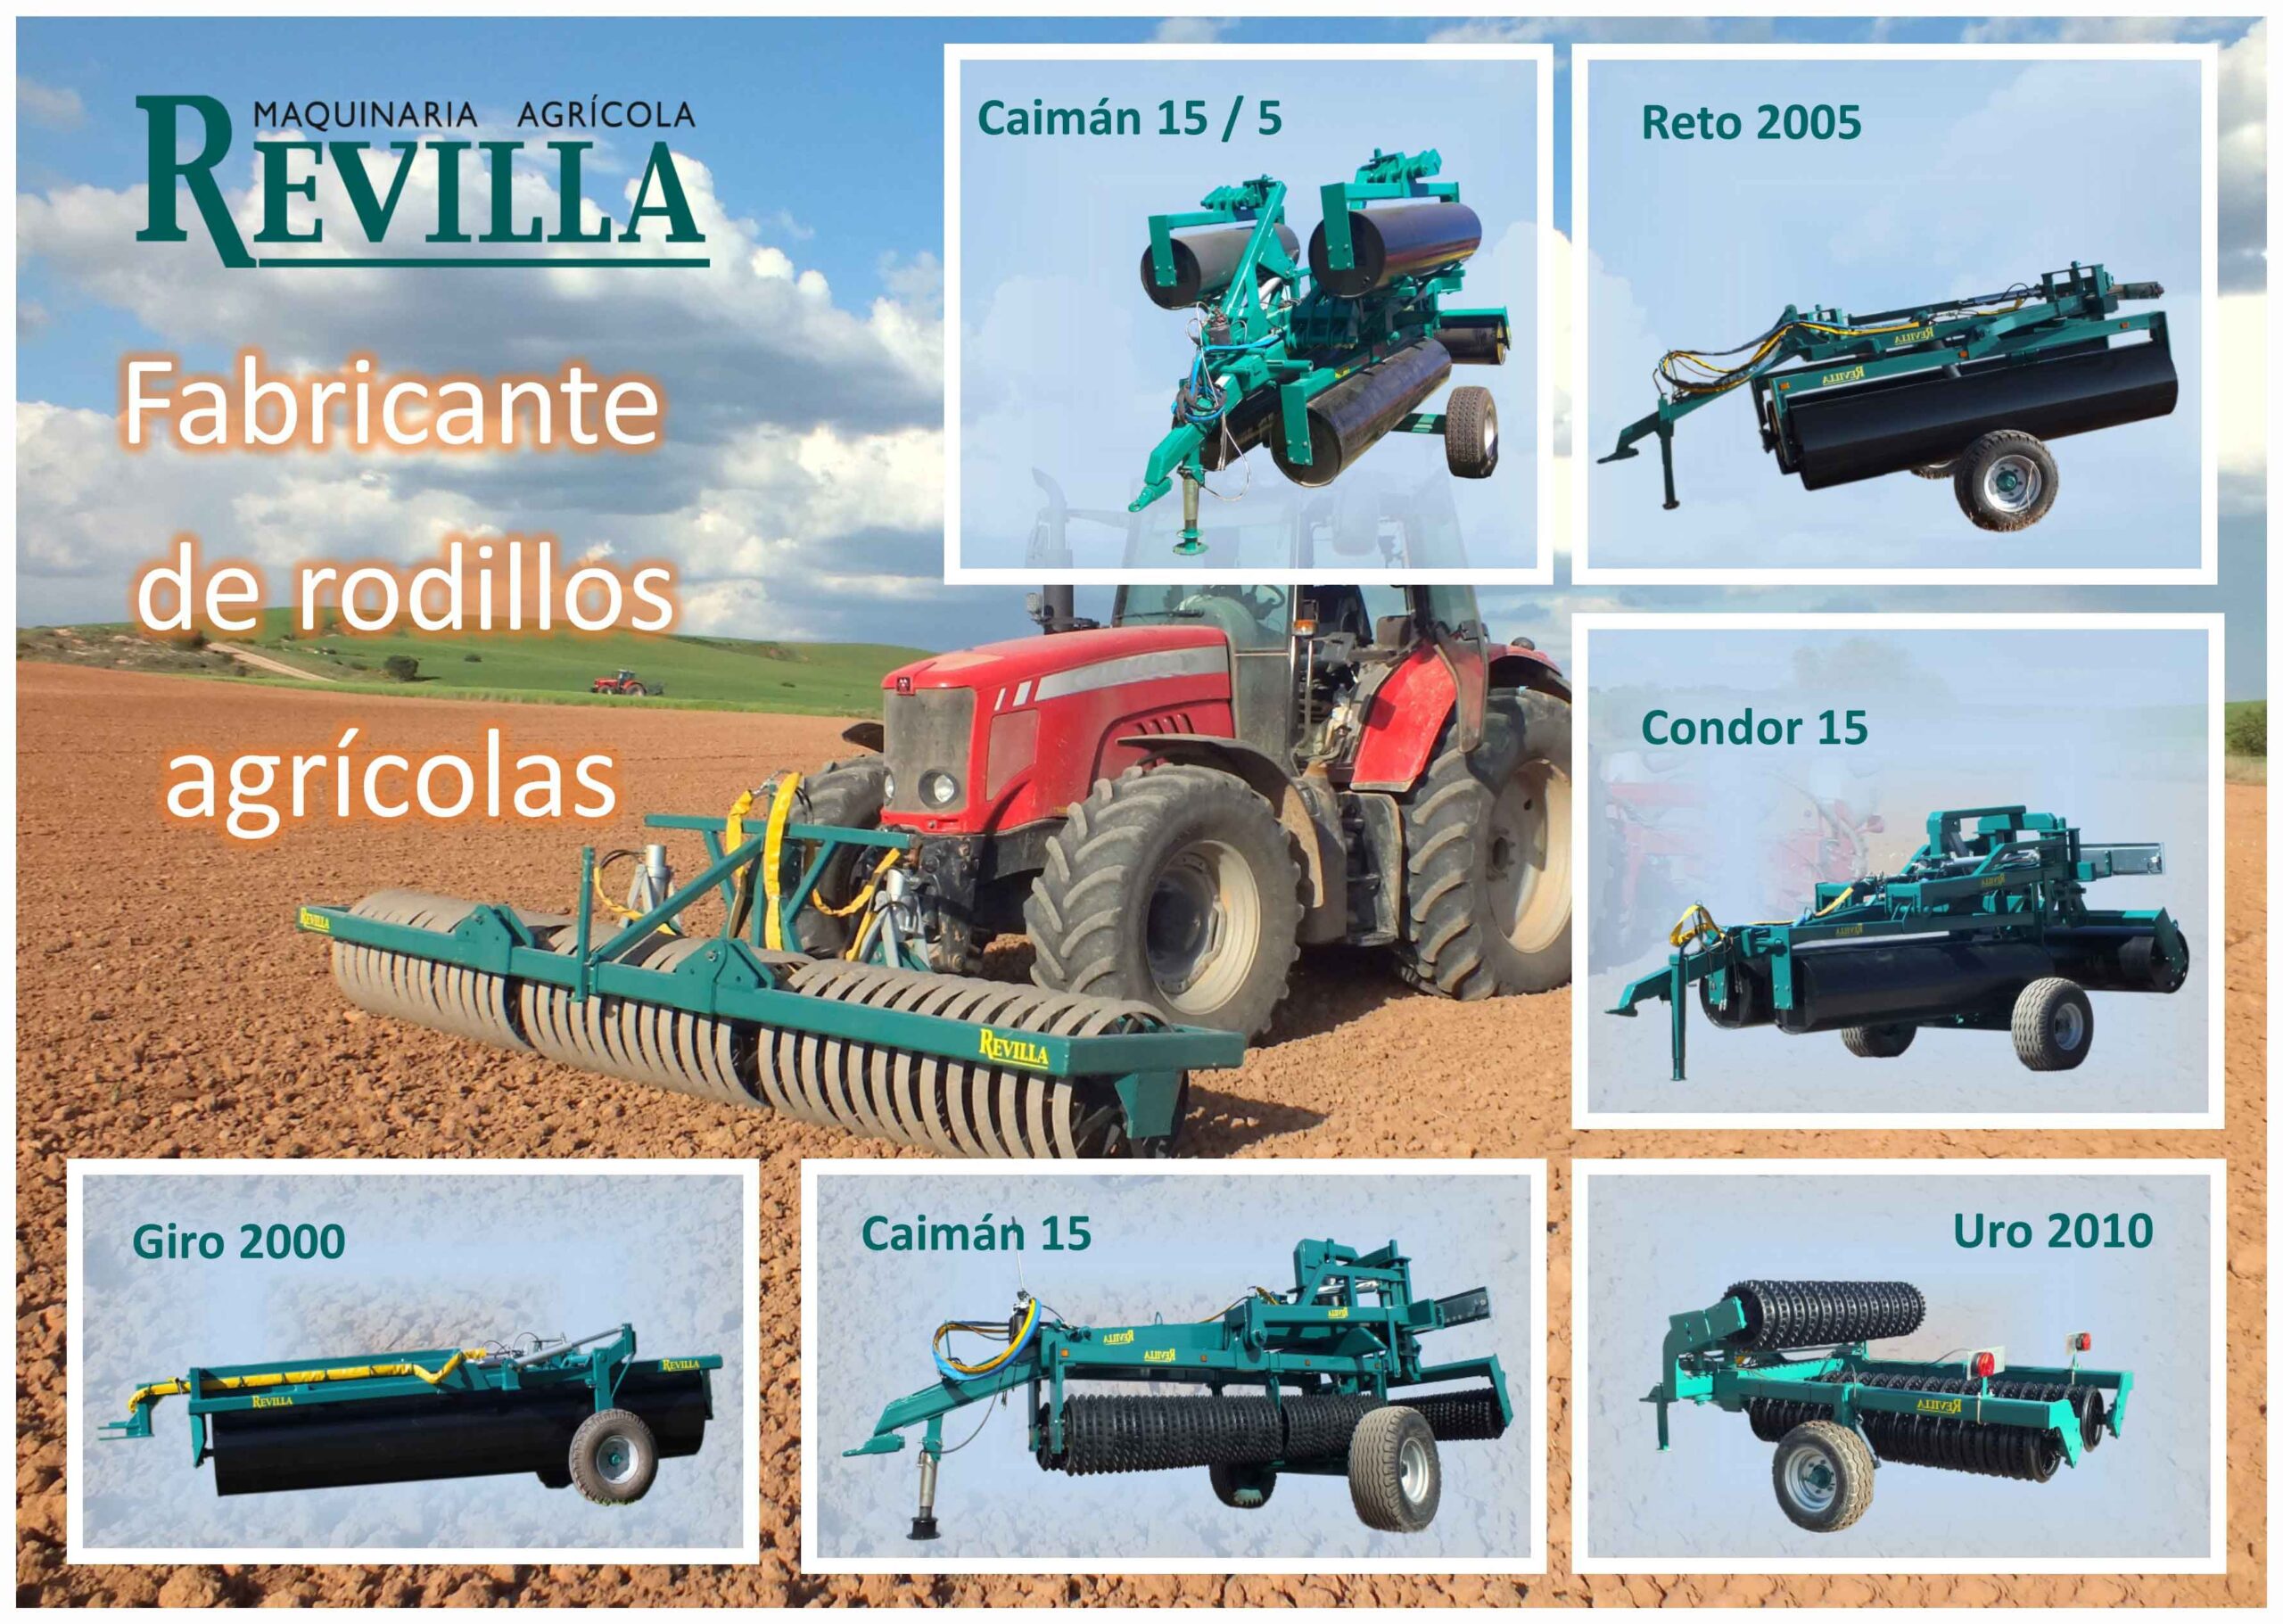 Fabricante de máquinas agrícolas de las marcas Gaher, Llorente, Vomer, Garcia Hoyos, Yudego, Santiago y Promodis